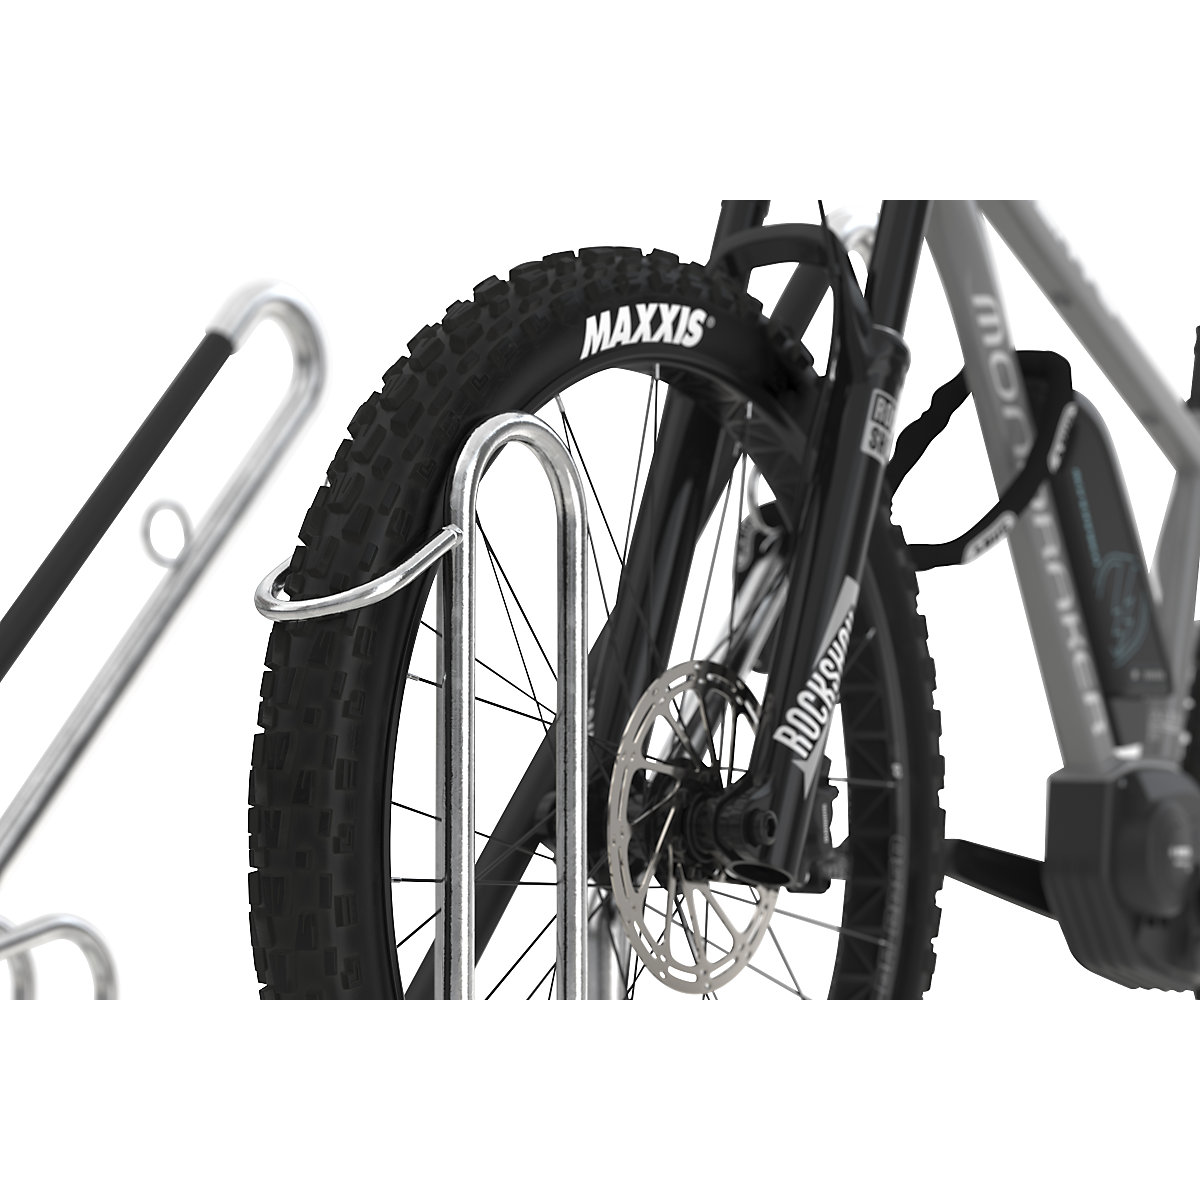 Stojak na rower, z pałąkiem do opierania (Zdjęcie produktu 2)-1